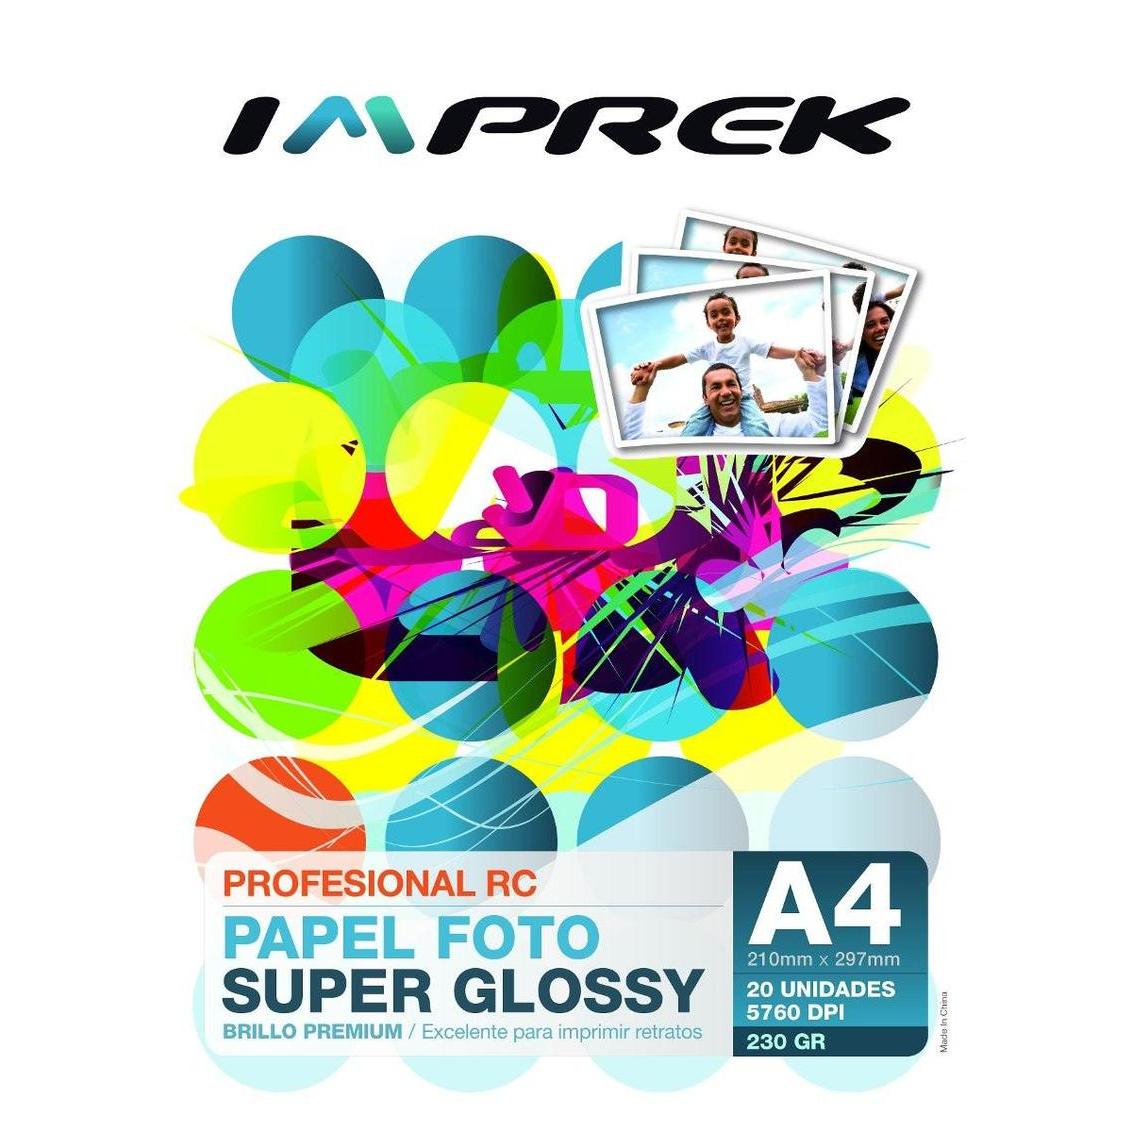  Si buscas Papel Premium Rc Super Glossy 230gr A4 X 20 Hojas Imprek puedes comprarlo con Imprek está en venta al mejor precio